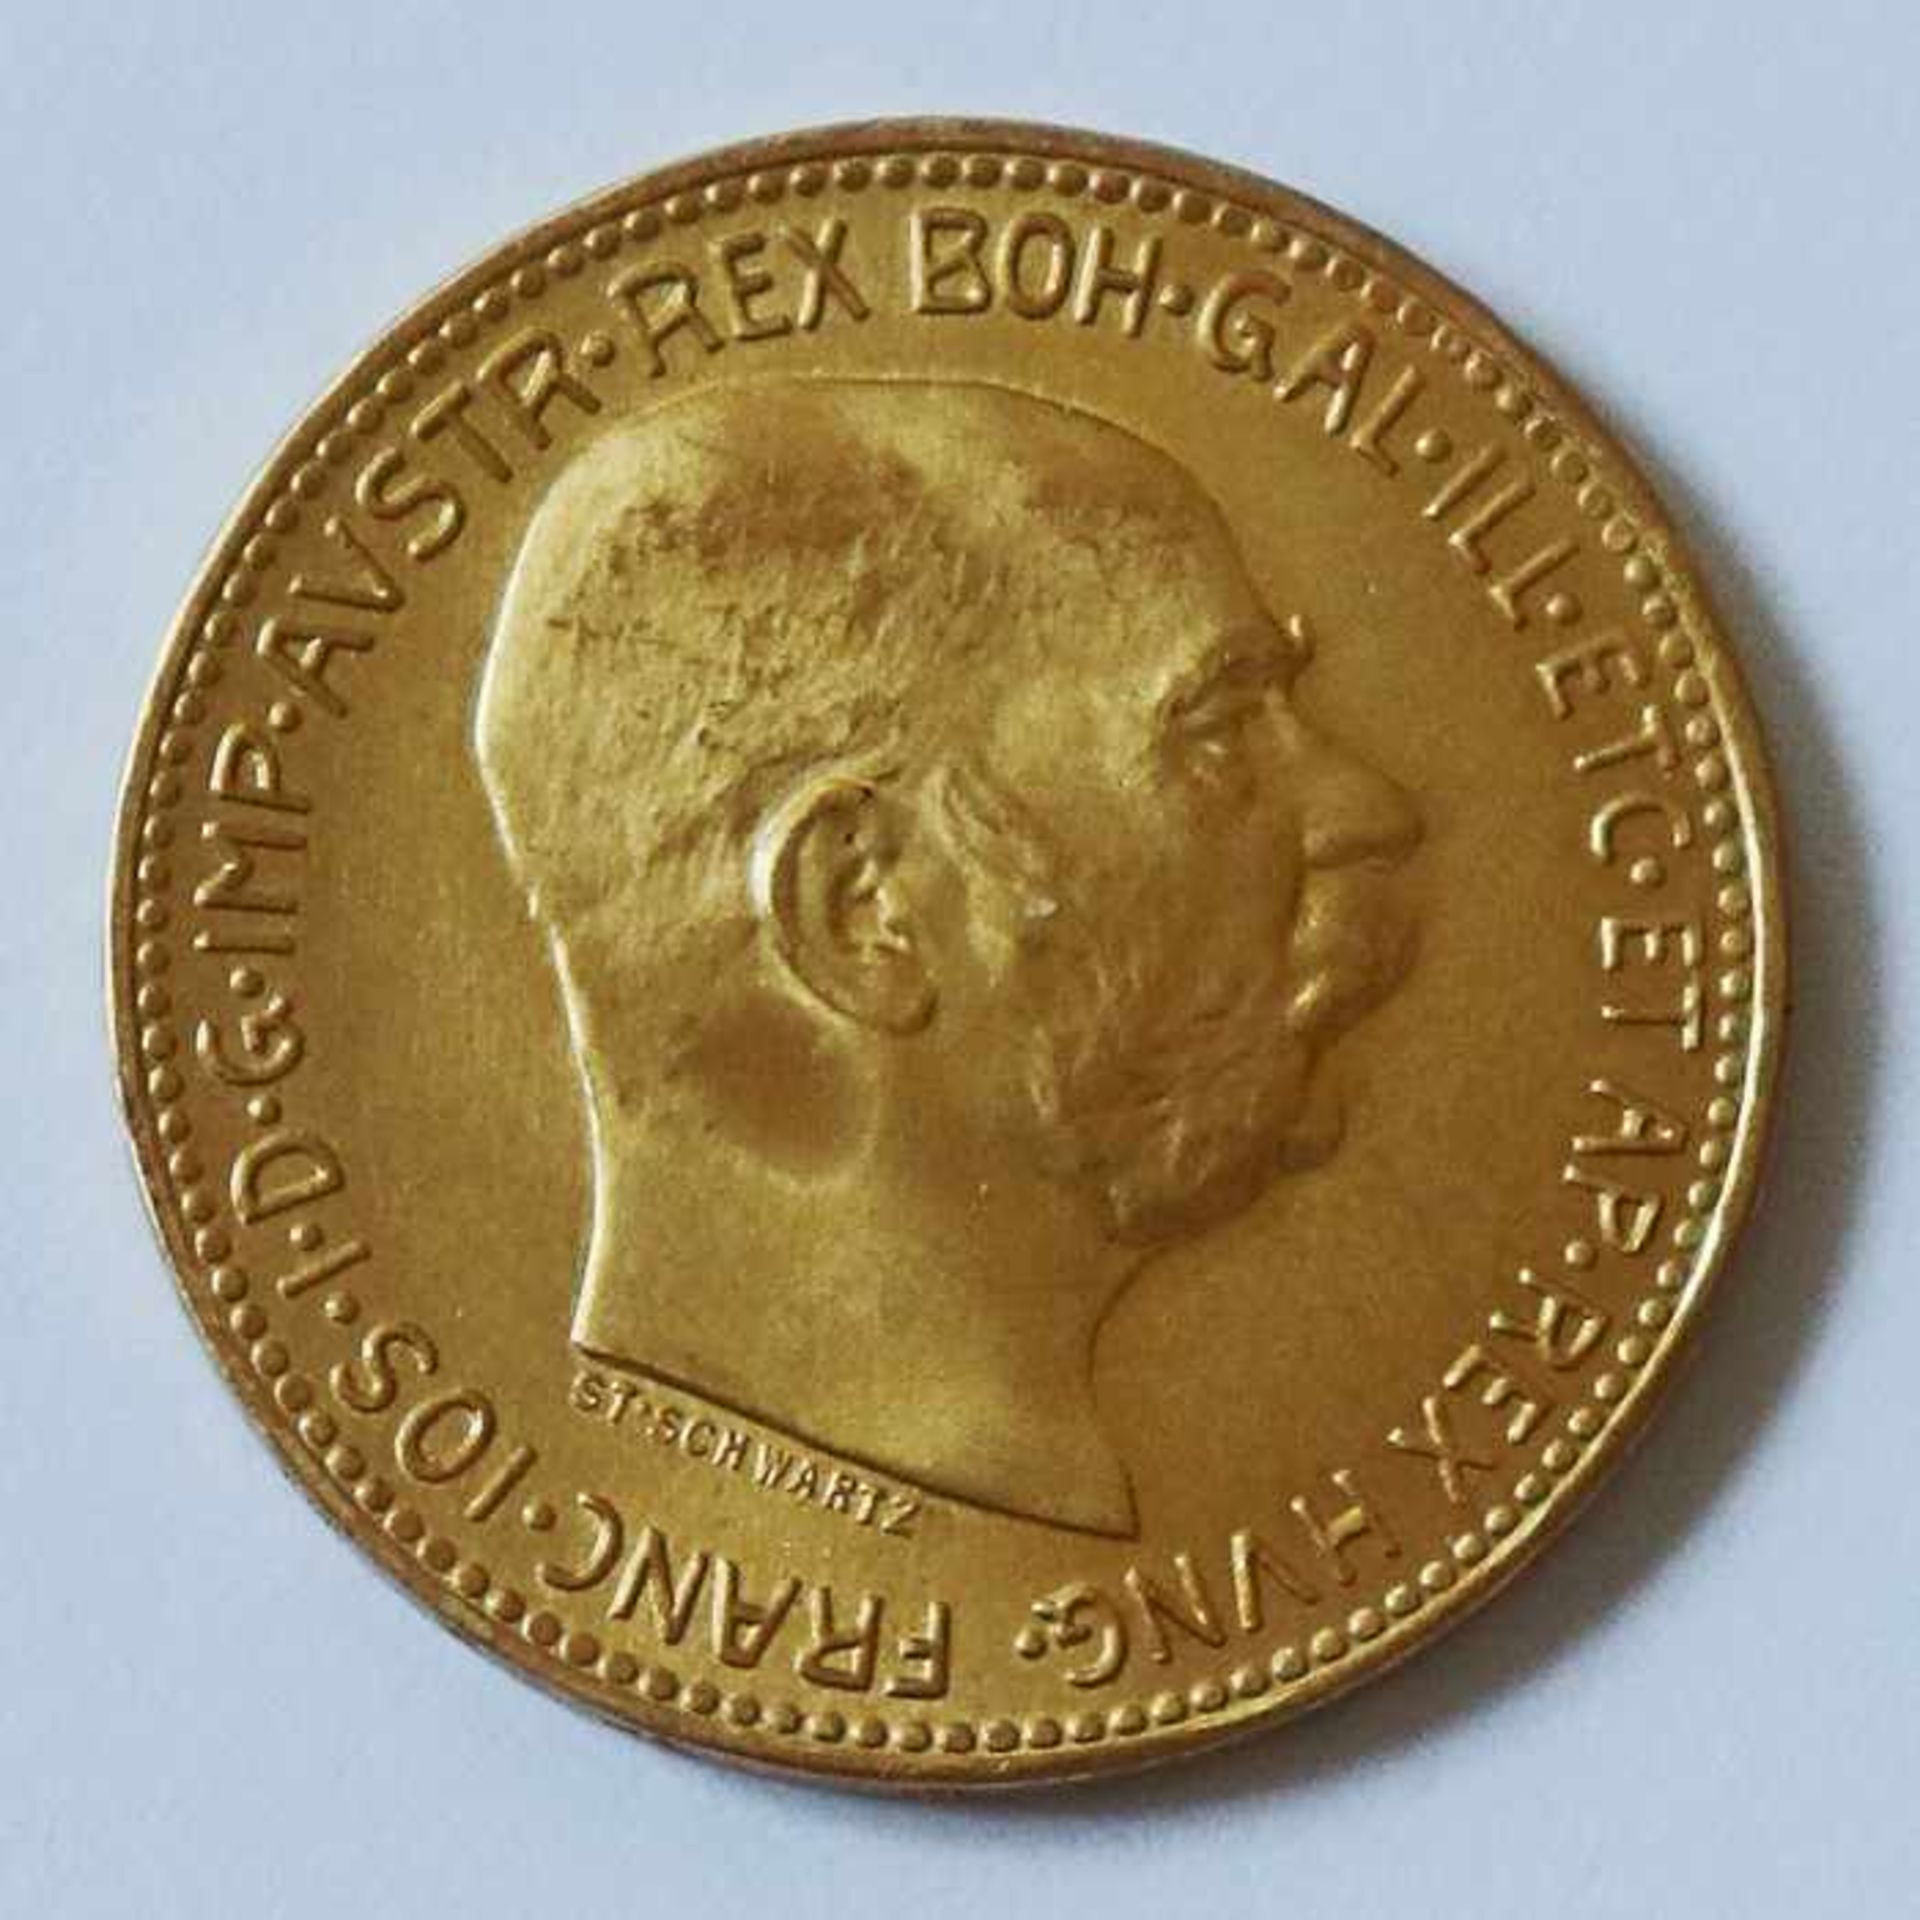 Gold - Österreich - 20 Kronen 1915Kaiser Franz Josef, D 21mm, G 6,77 g, vz - Image 2 of 2